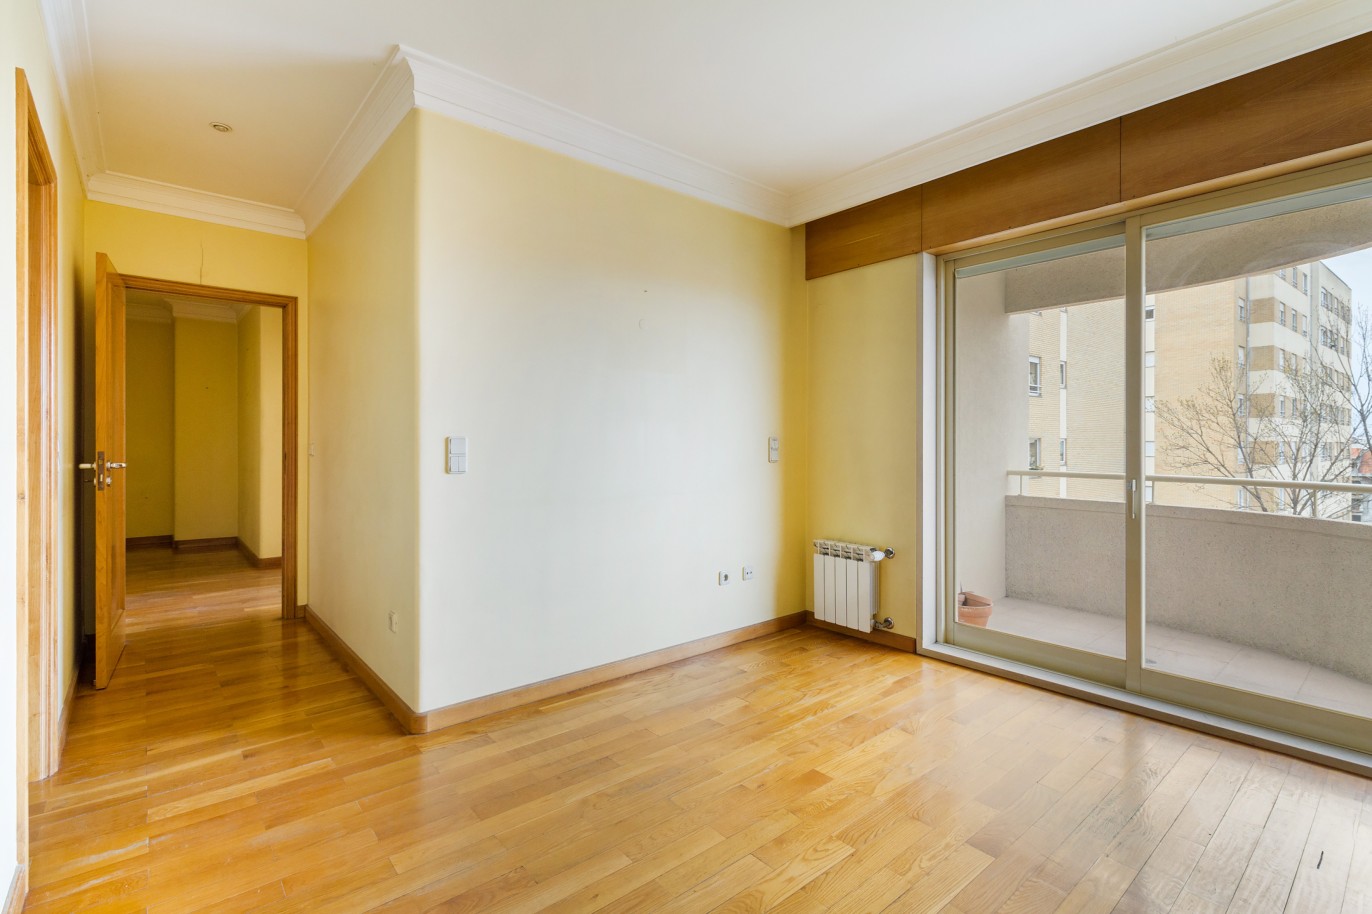 Apartamento com varanda, para venda, no Porto_221680